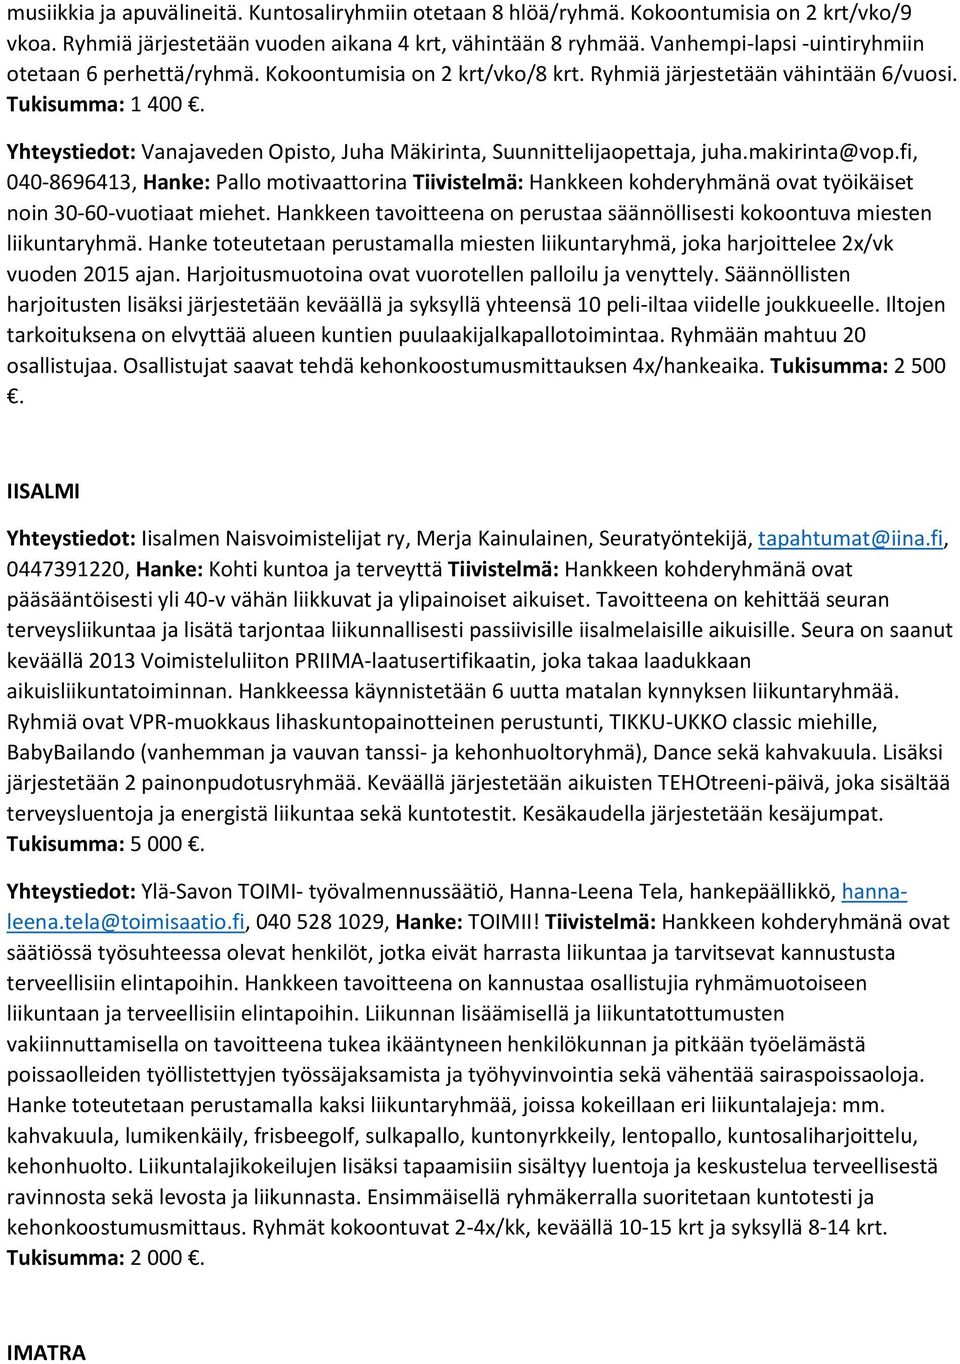 Yhteystiedot: Vanajaveden Opisto, Juha Mäkirinta, Suunnittelijaopettaja, juha.makirinta@vop.